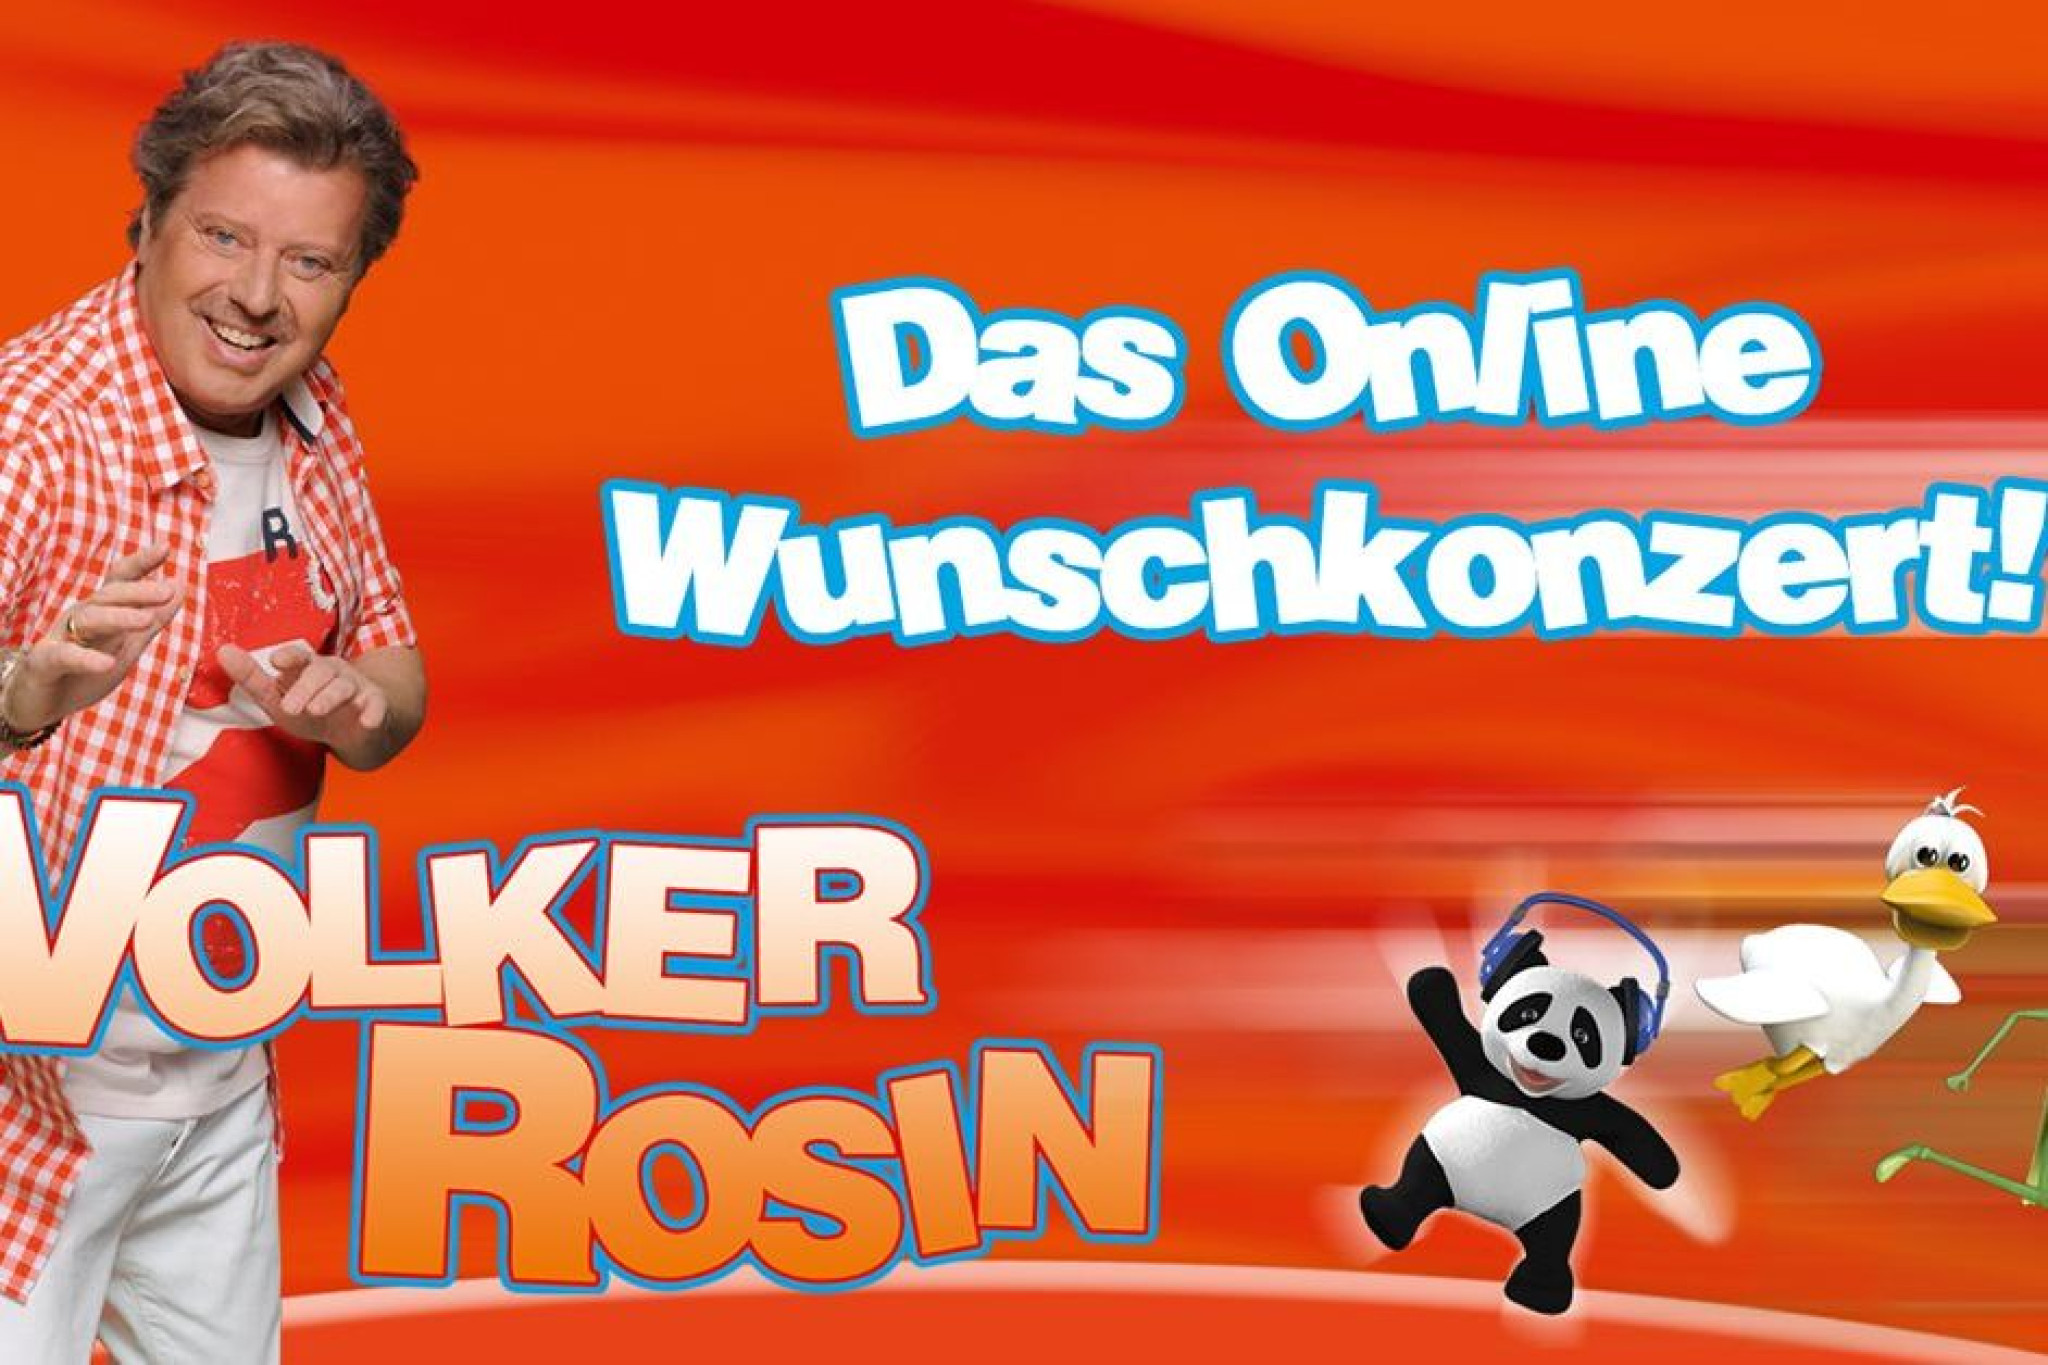 Volker Rosin Das Online Wunschkonzert